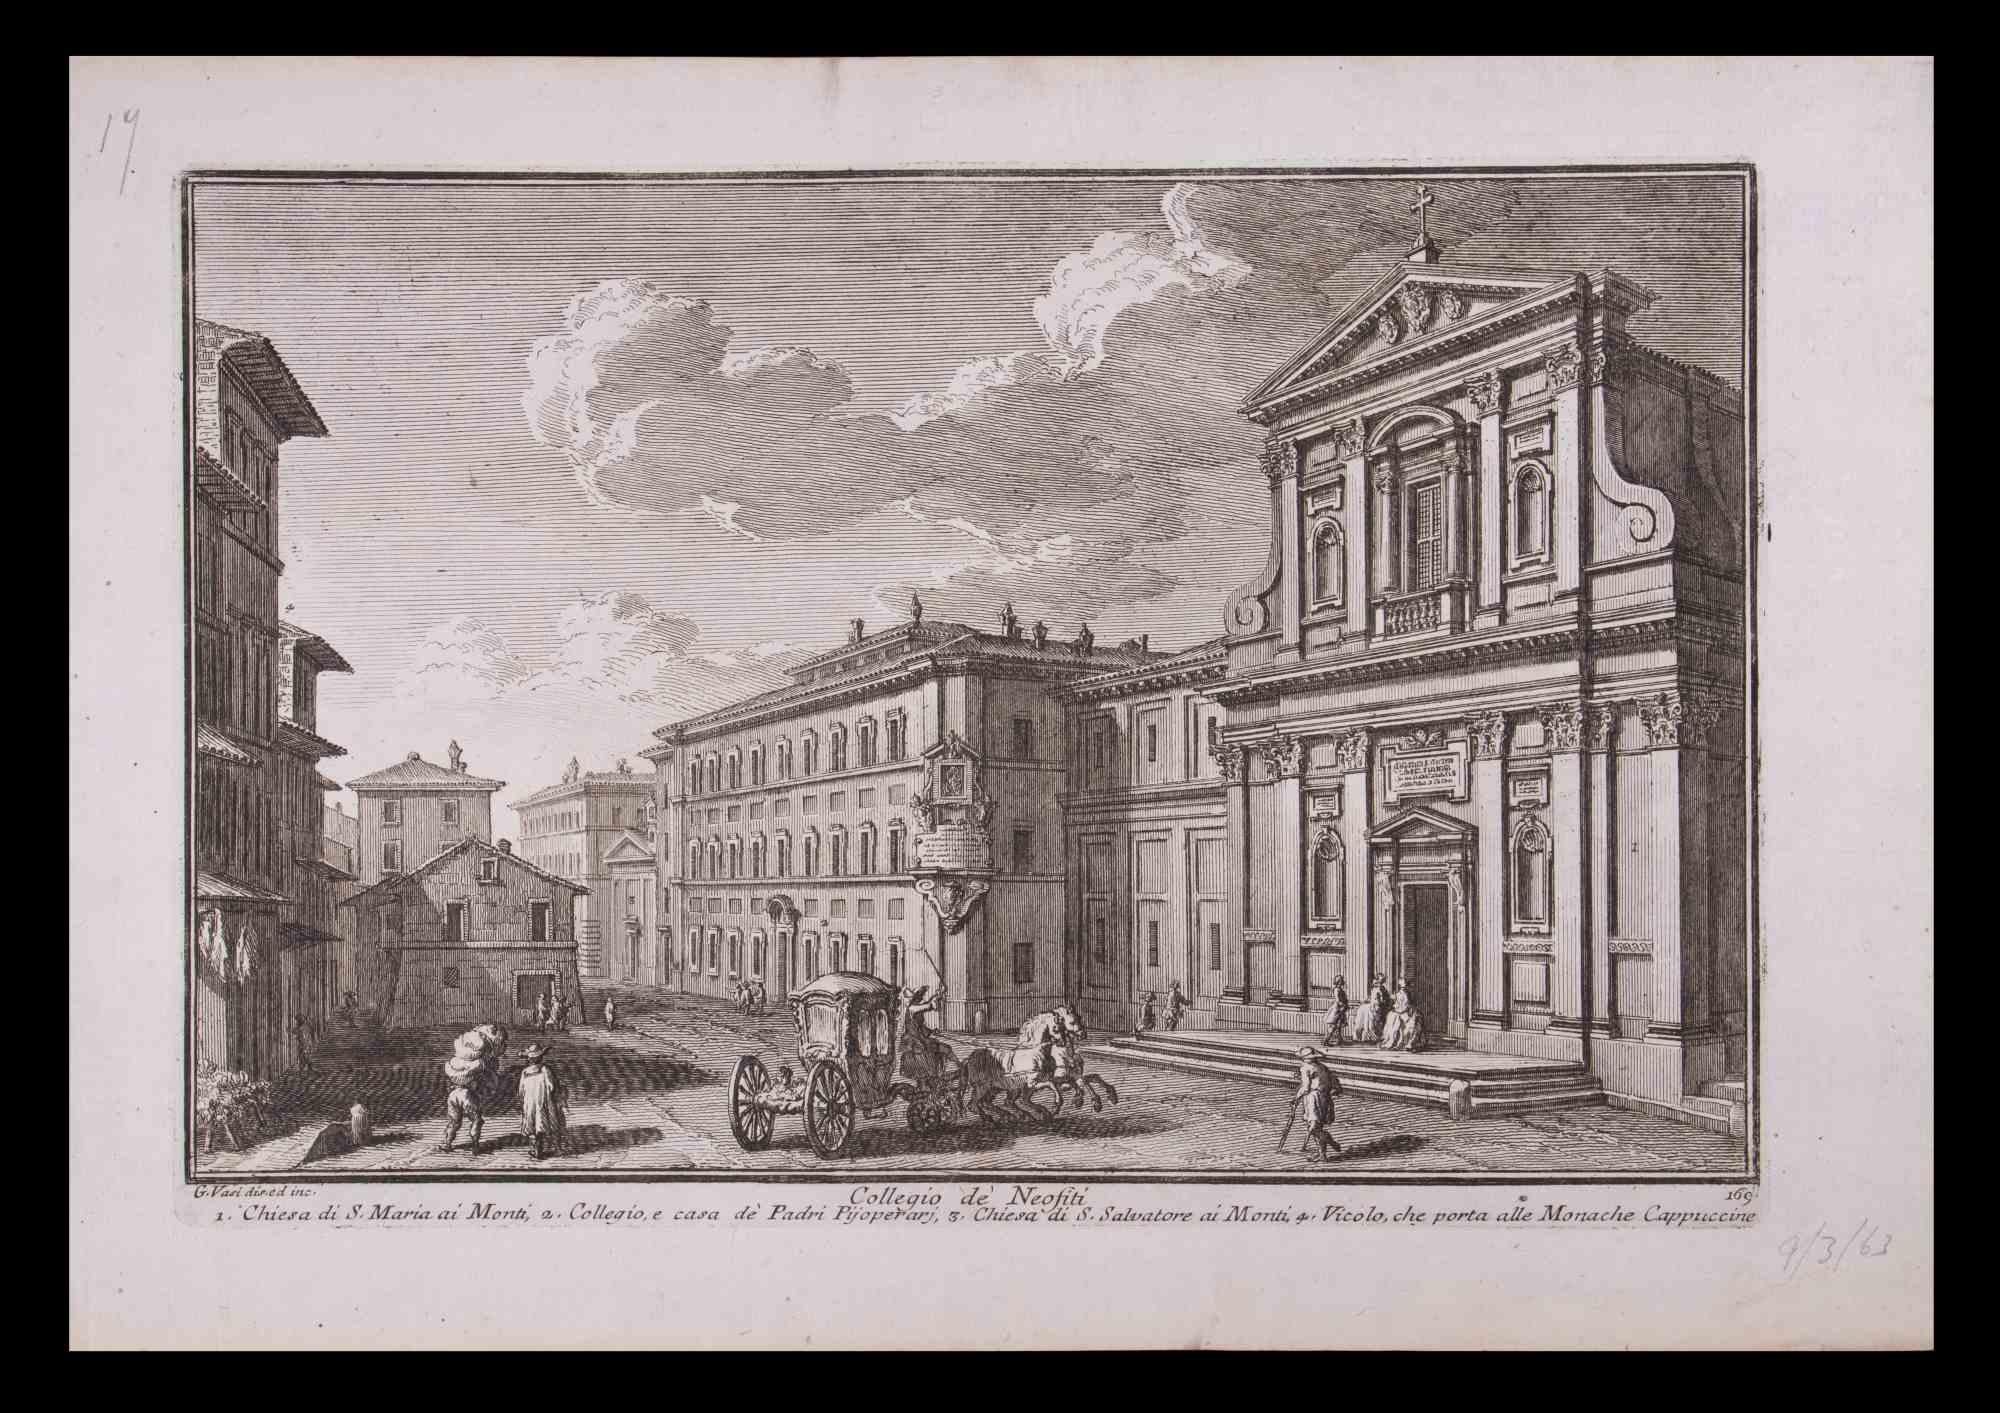 Collegio De Neofiti ist eine Original-Schwarz-Weiß-Radierung aus dem späten 18. Jahrhundert von Giuseppe Vasi.

Signiert und betitelt am unteren Rand der Platte.

Gute Bedingungen und gealterte Ränder mit einigen Stockflecken.

Giuseppe Vasi 